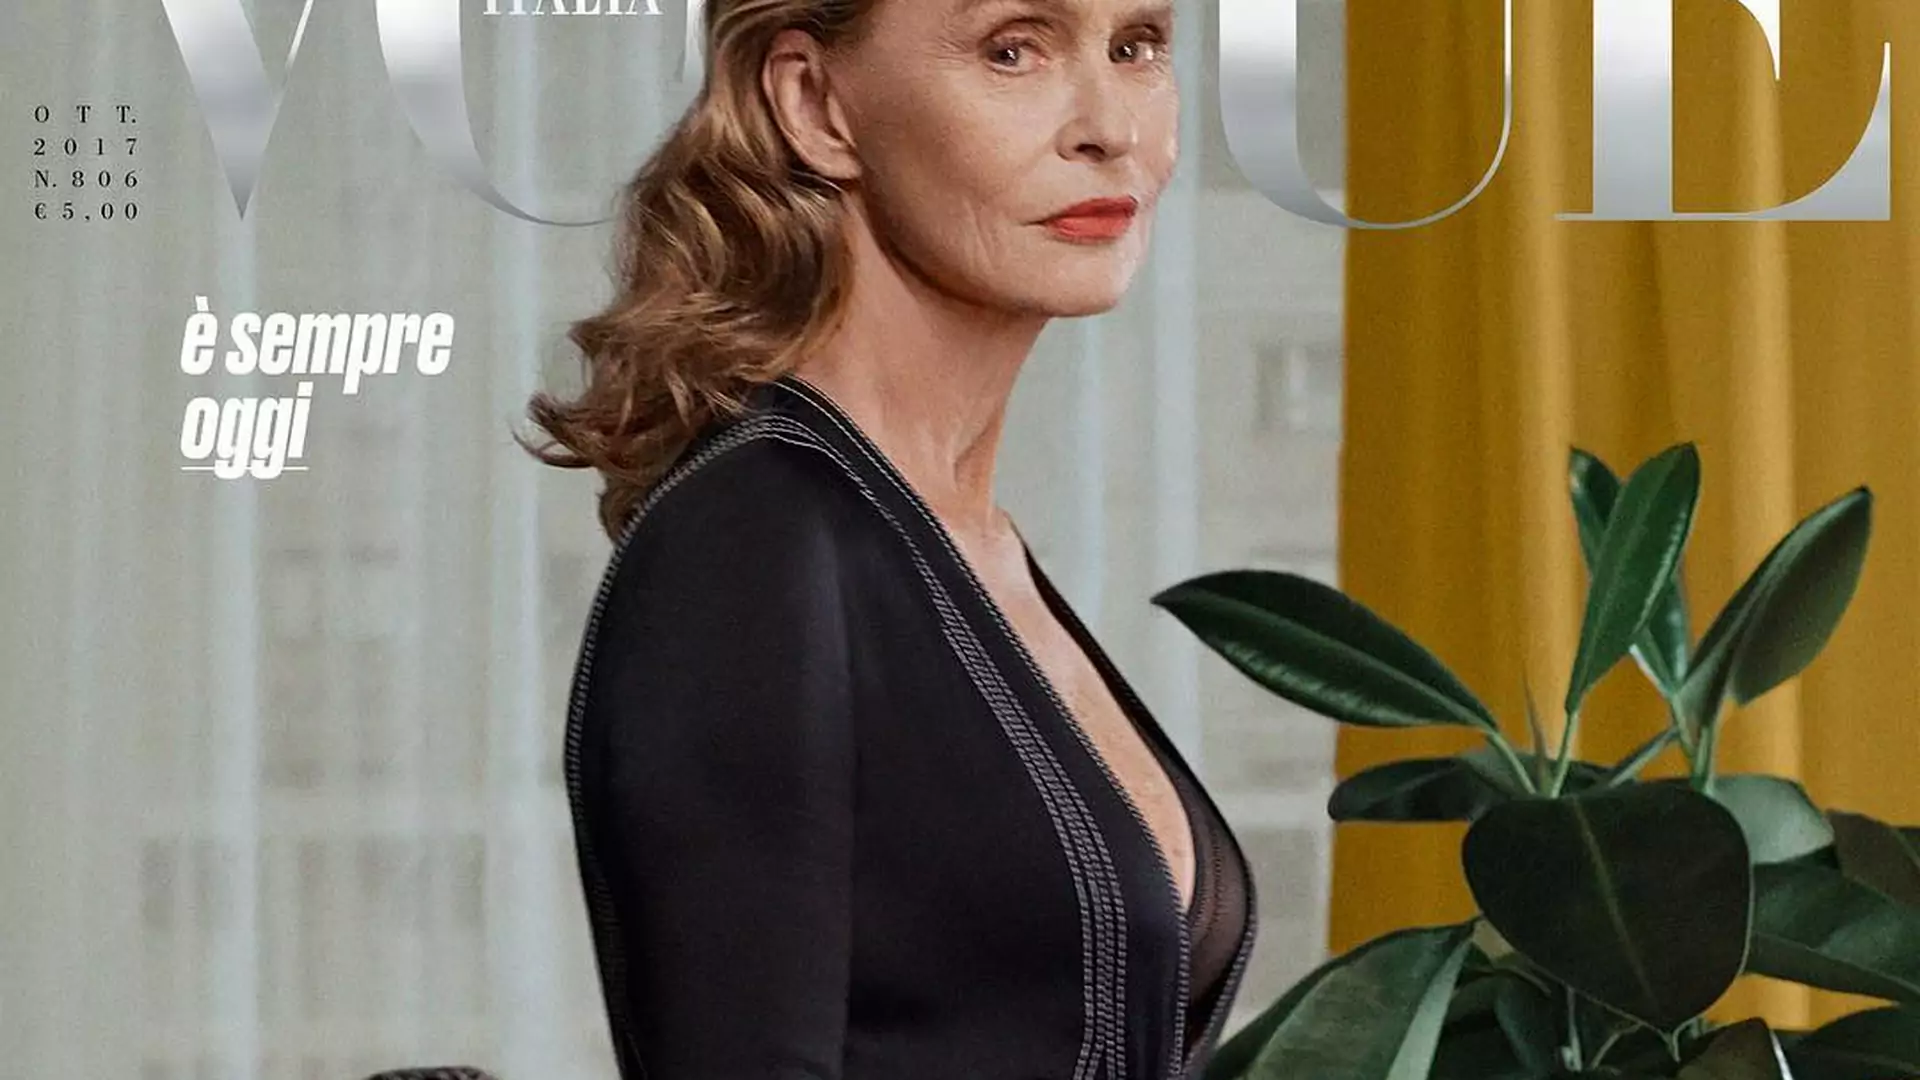 73-latka na okładce "Vogue'a"! "Kobieta w tym wieku jest nadal piękna, atrakcyjna i tętniąca życiem"